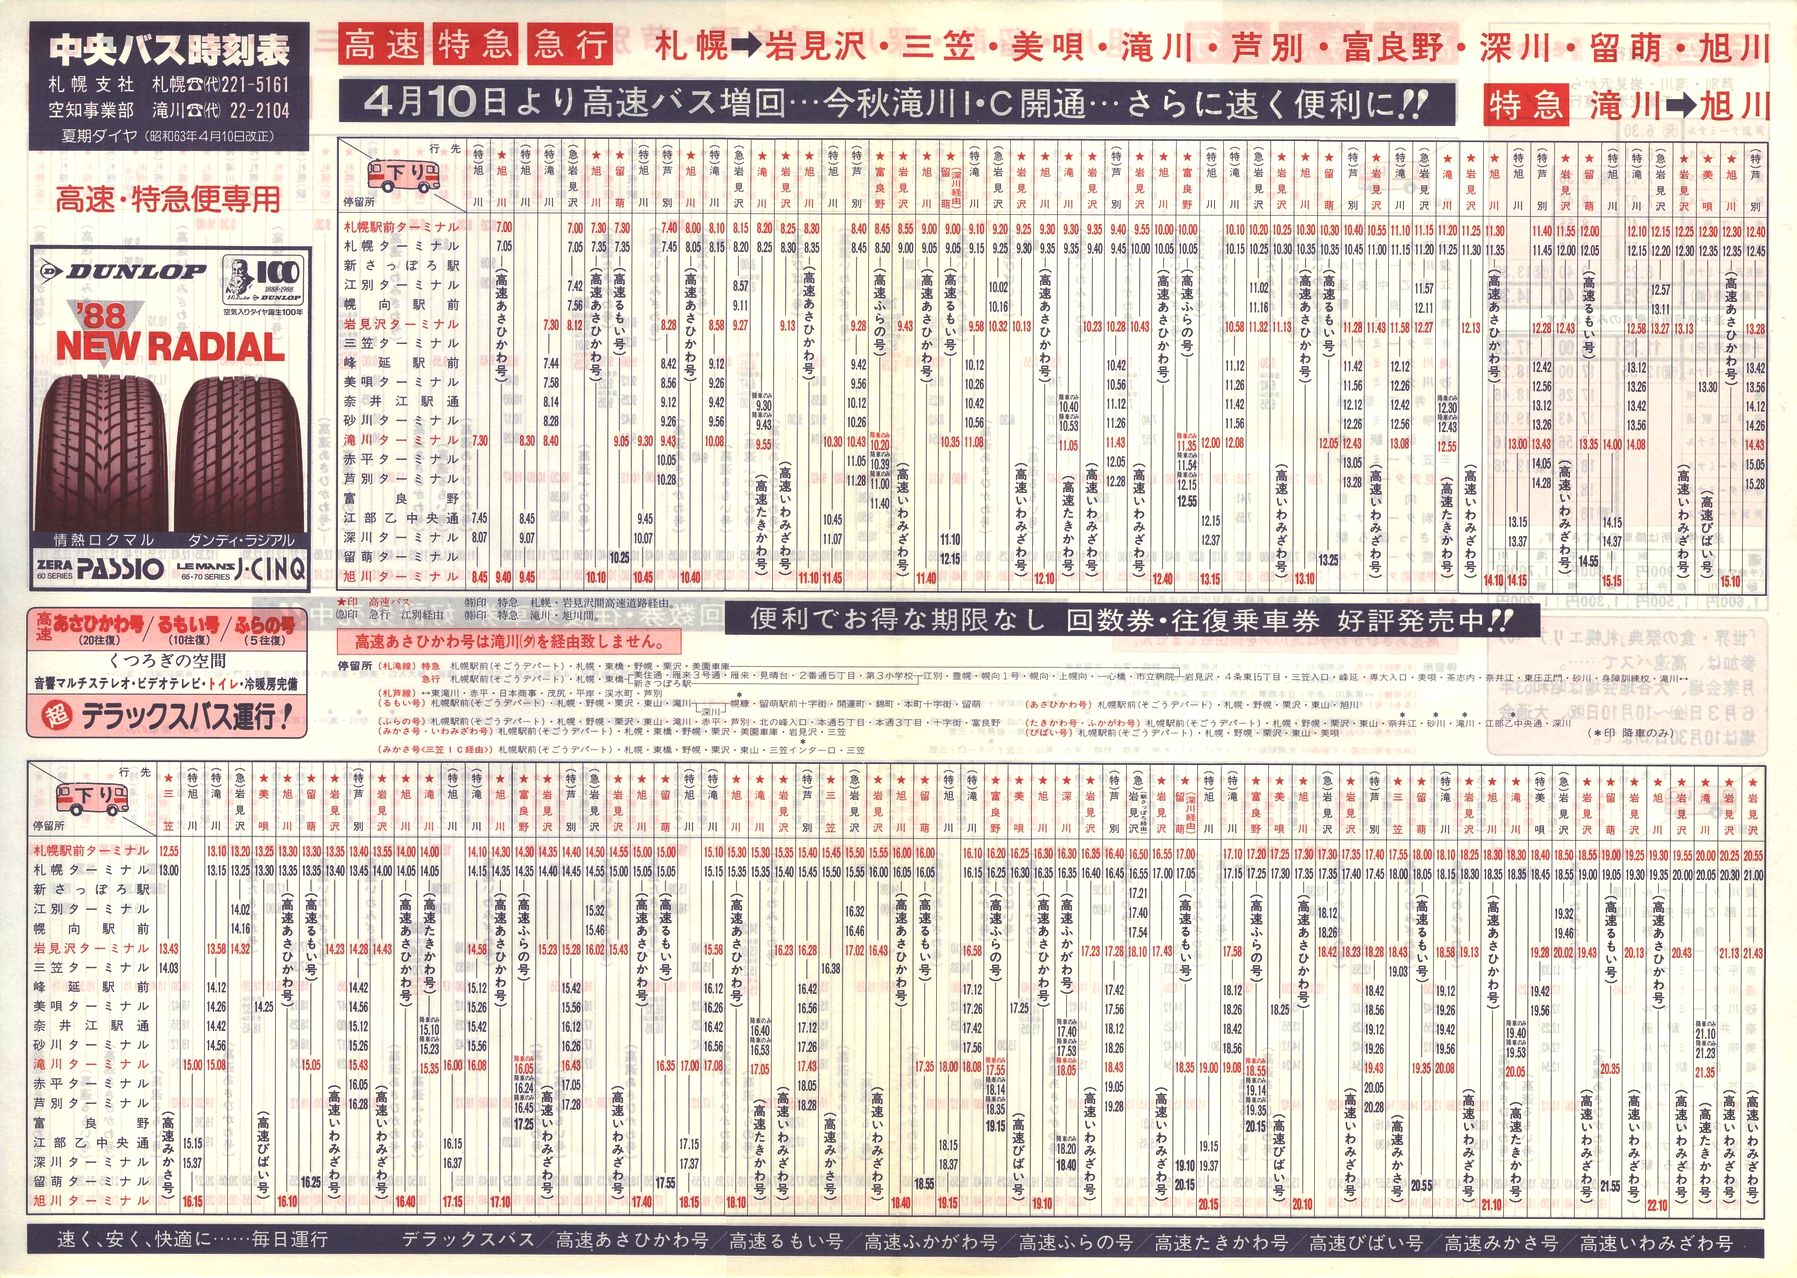 1988-04-10改正_北海道中央バス(空知)_高速特急便時刻表表面